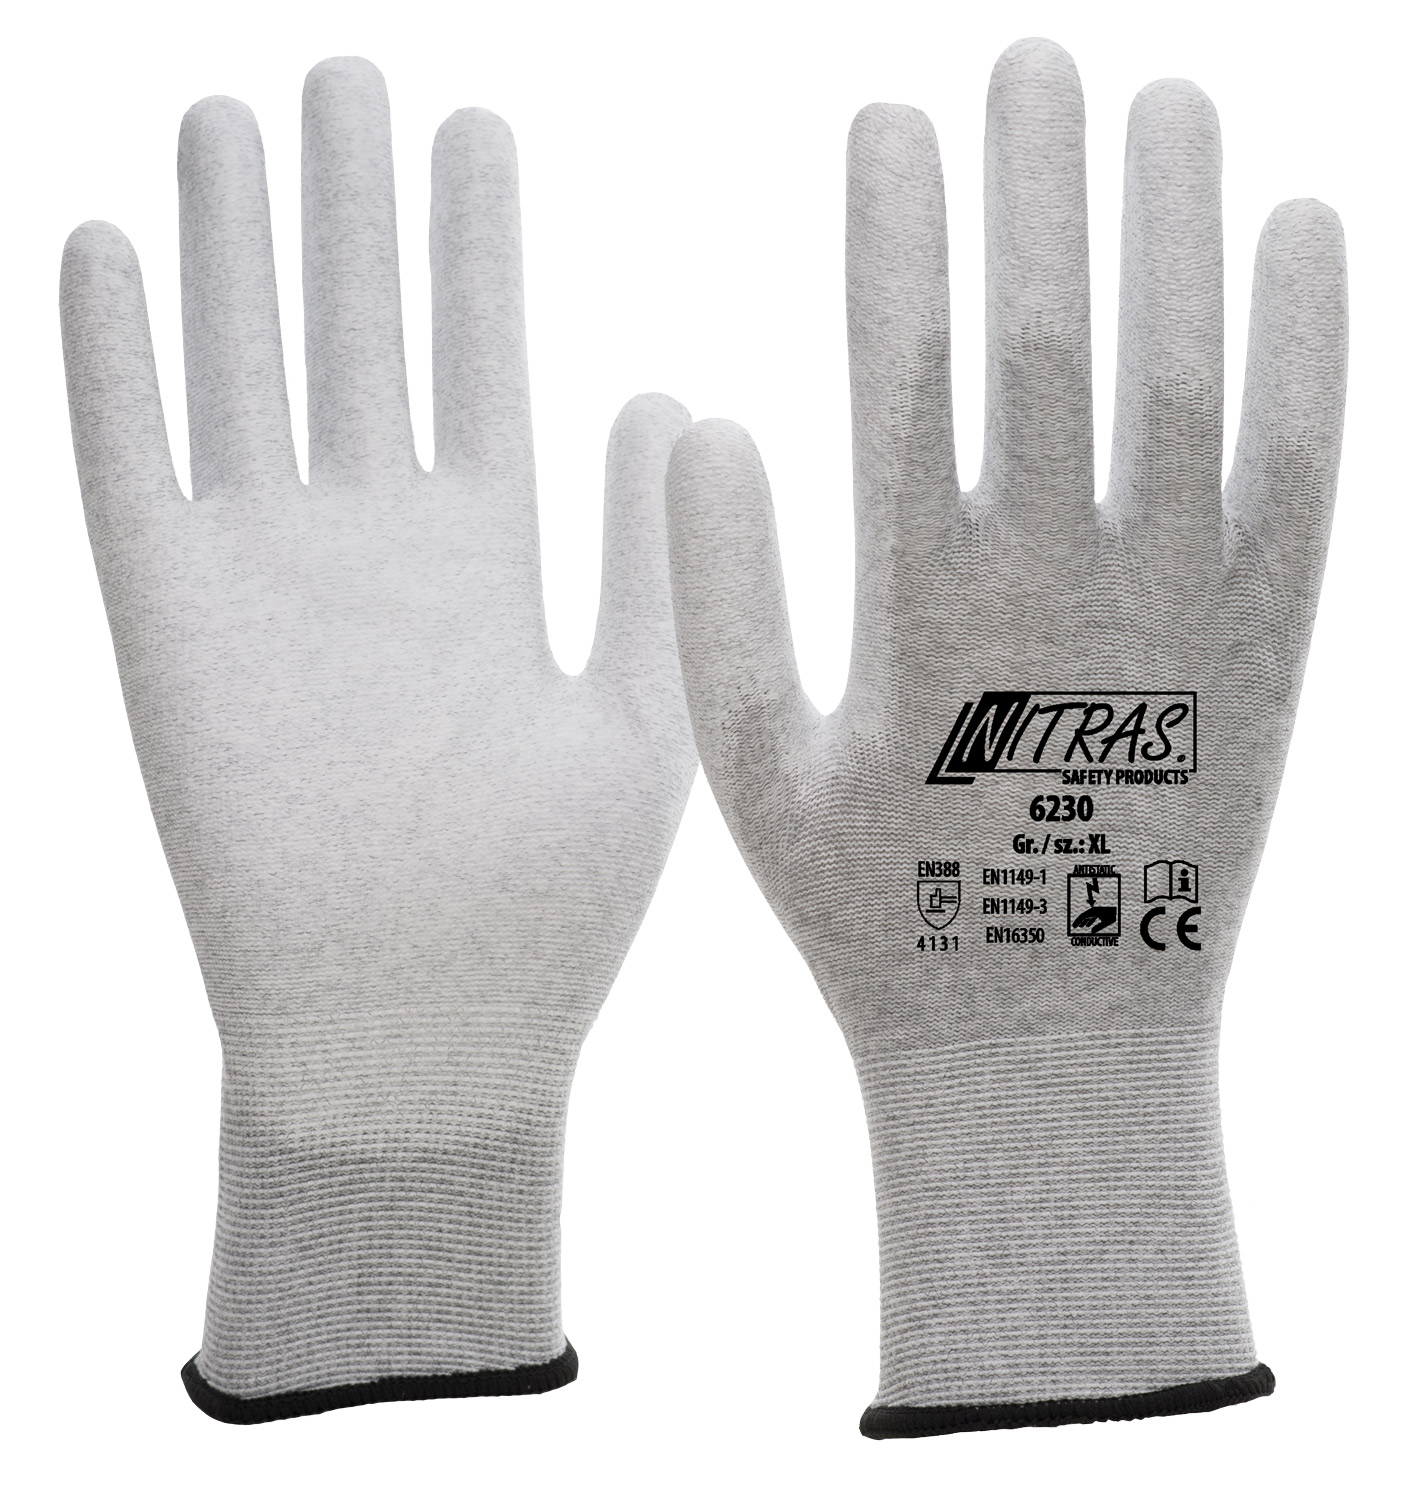 ESD-Handschuh Touch NITRAS 6230, EN 388